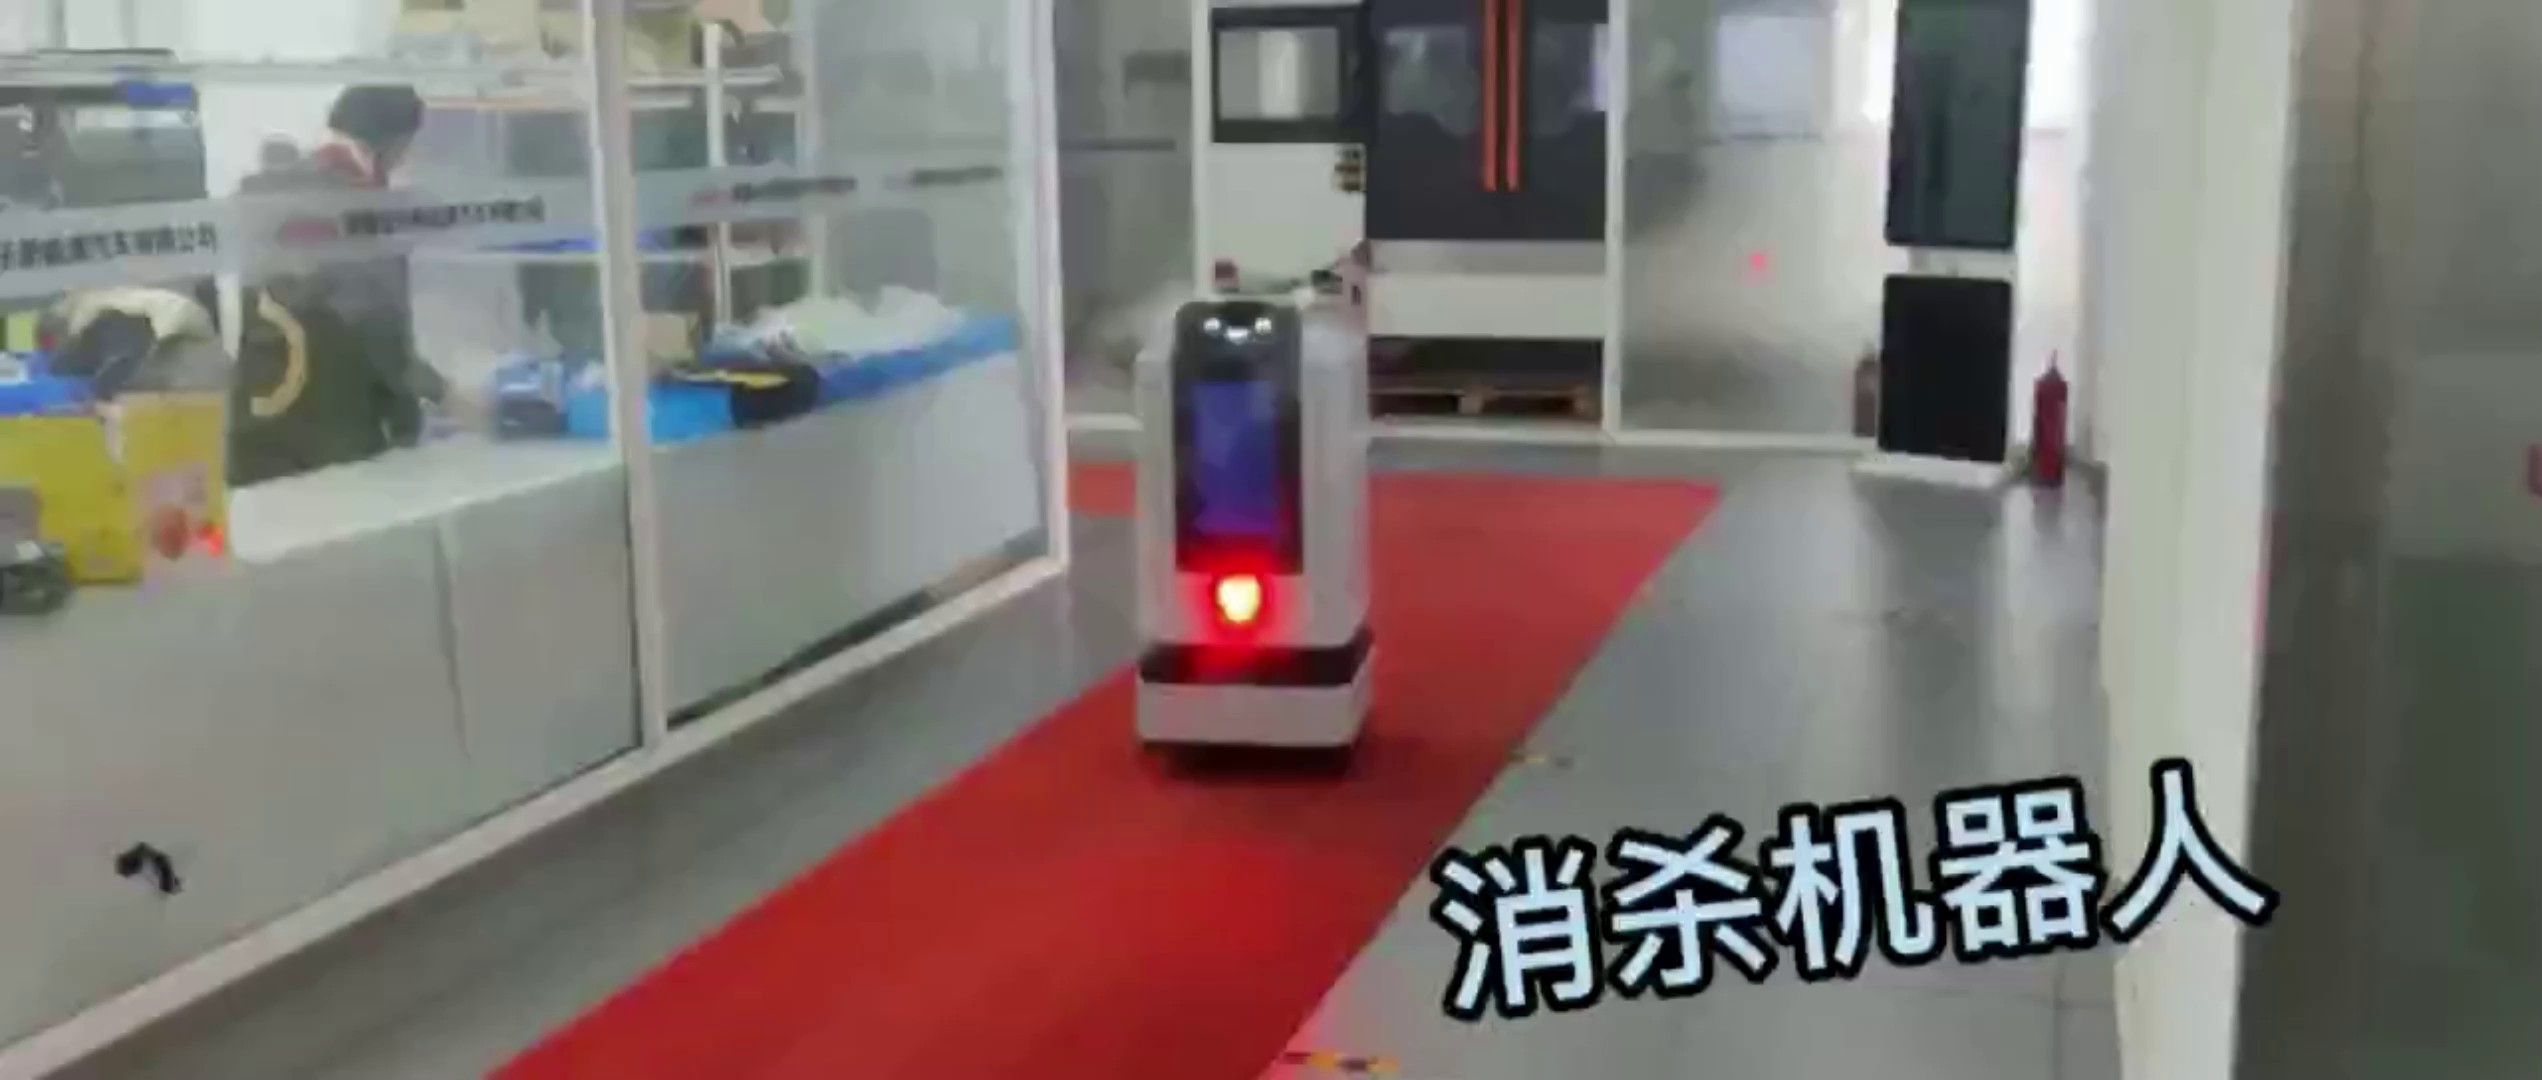 上海带编码器机器人市场,机器人